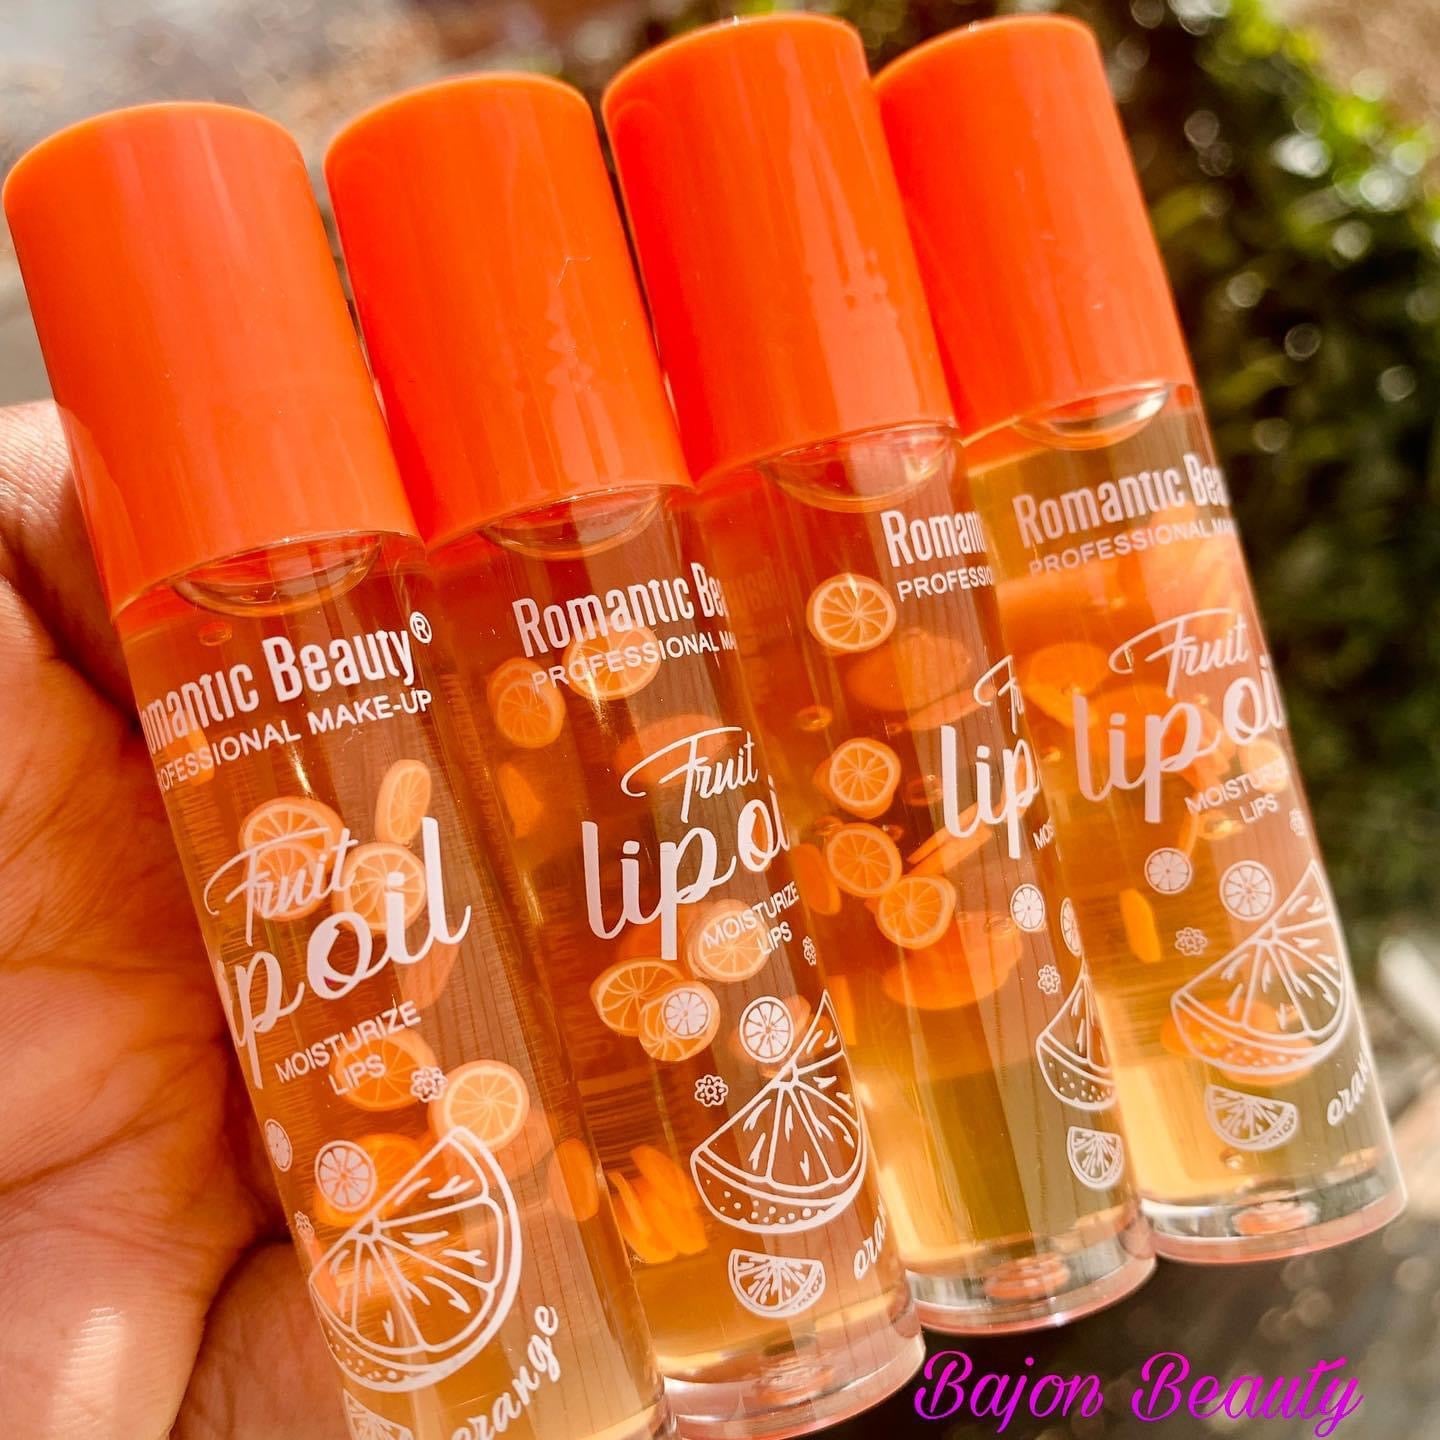 Romantic Beauty Fruity Lip Oil orange